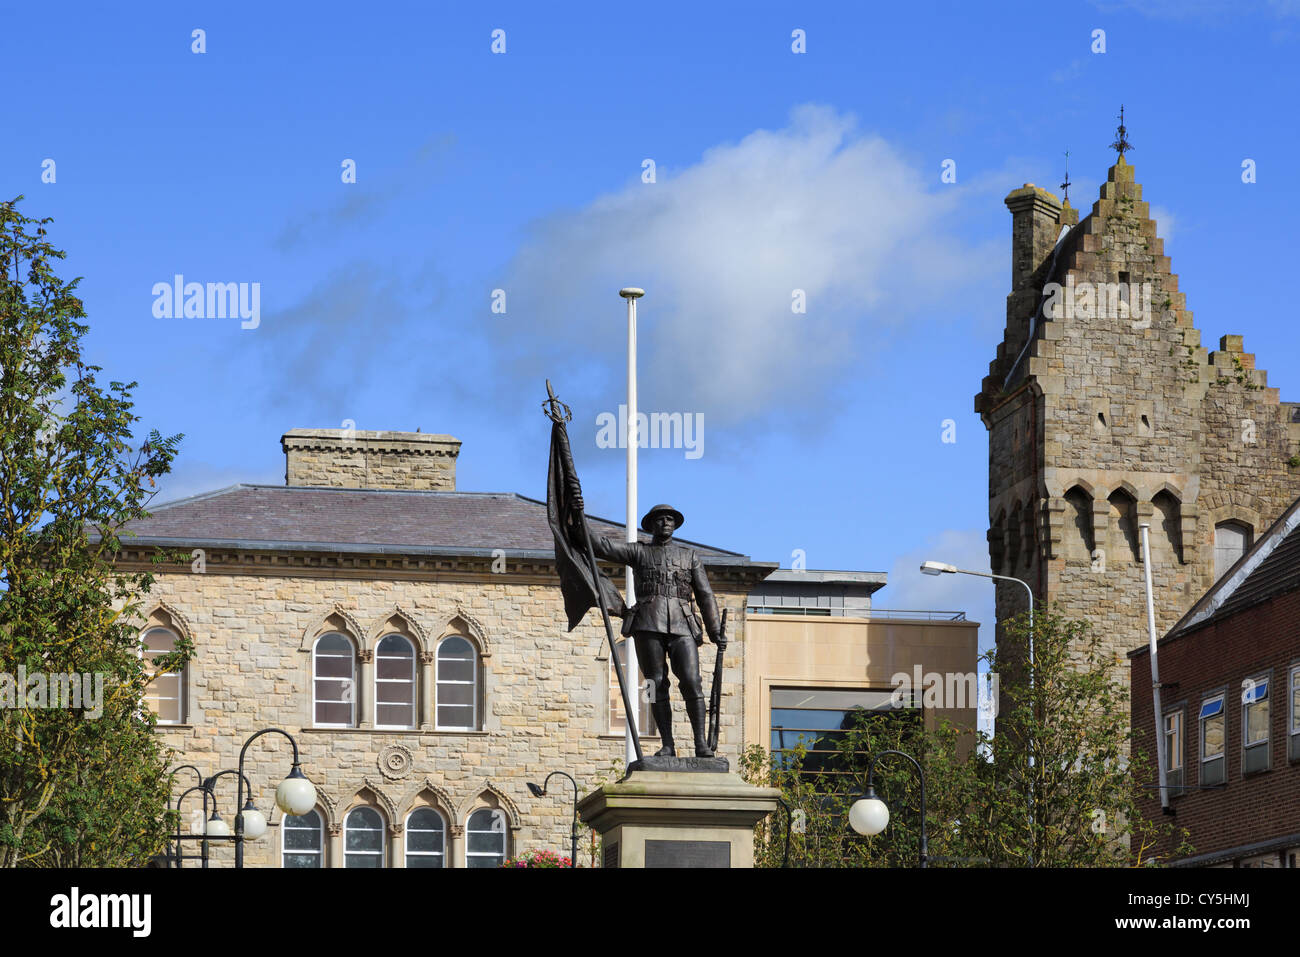 Mémorial de guerre et ex-caserne de police dans un bâtiment de style château au Market Square Dungannon Tyrone Irlande du Nord UK Banque D'Images